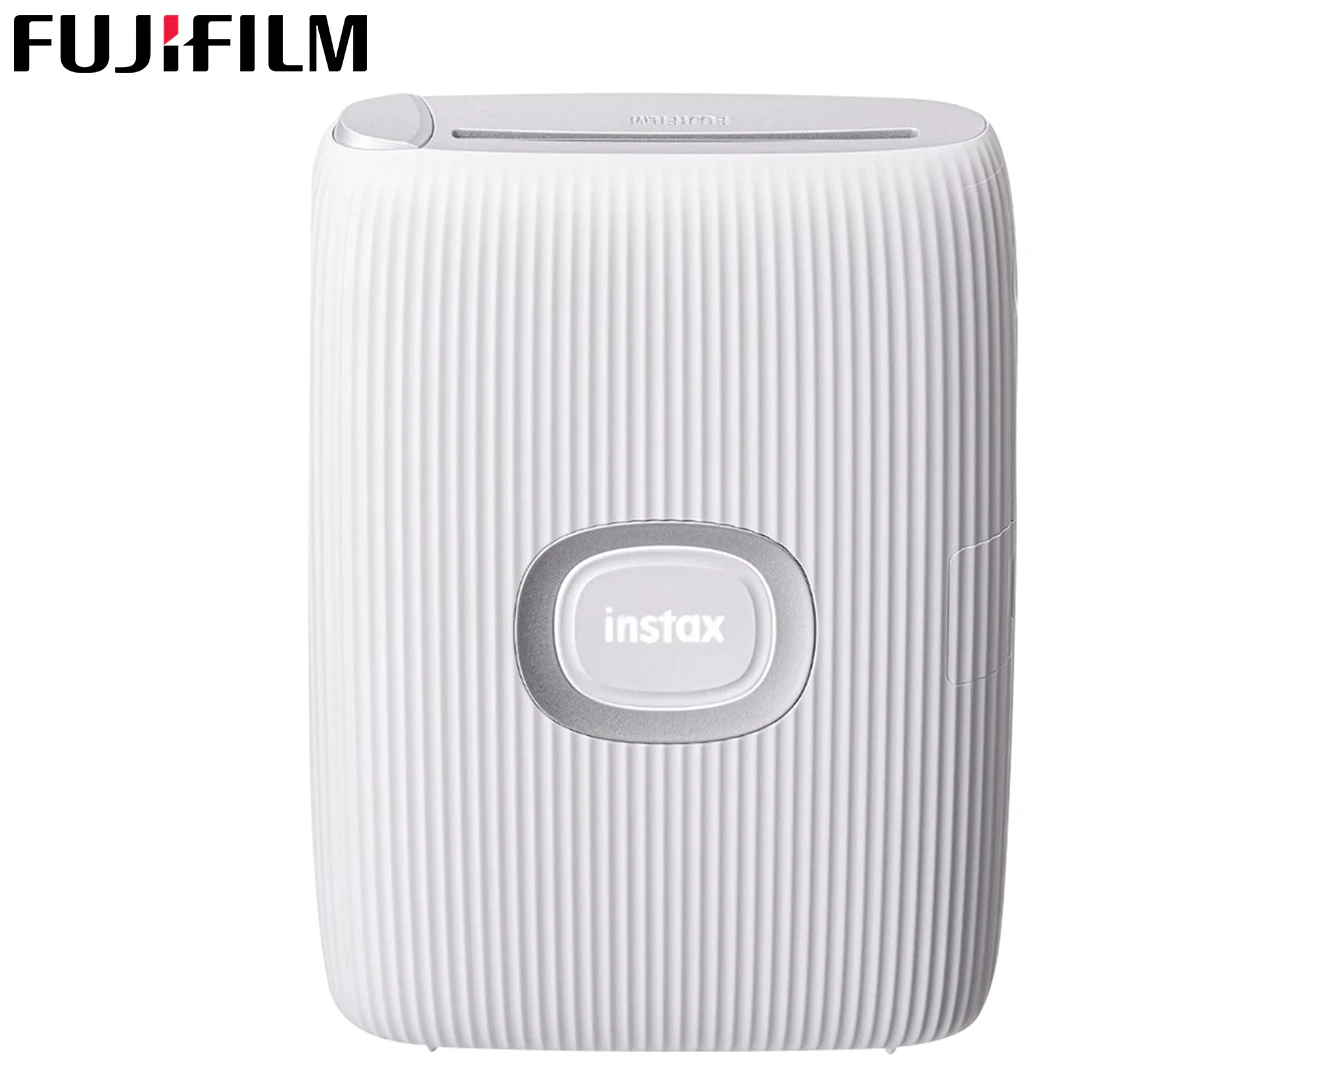 Fujifilm Instax Mini Link 2 - Imprimante photo mobile - White argile